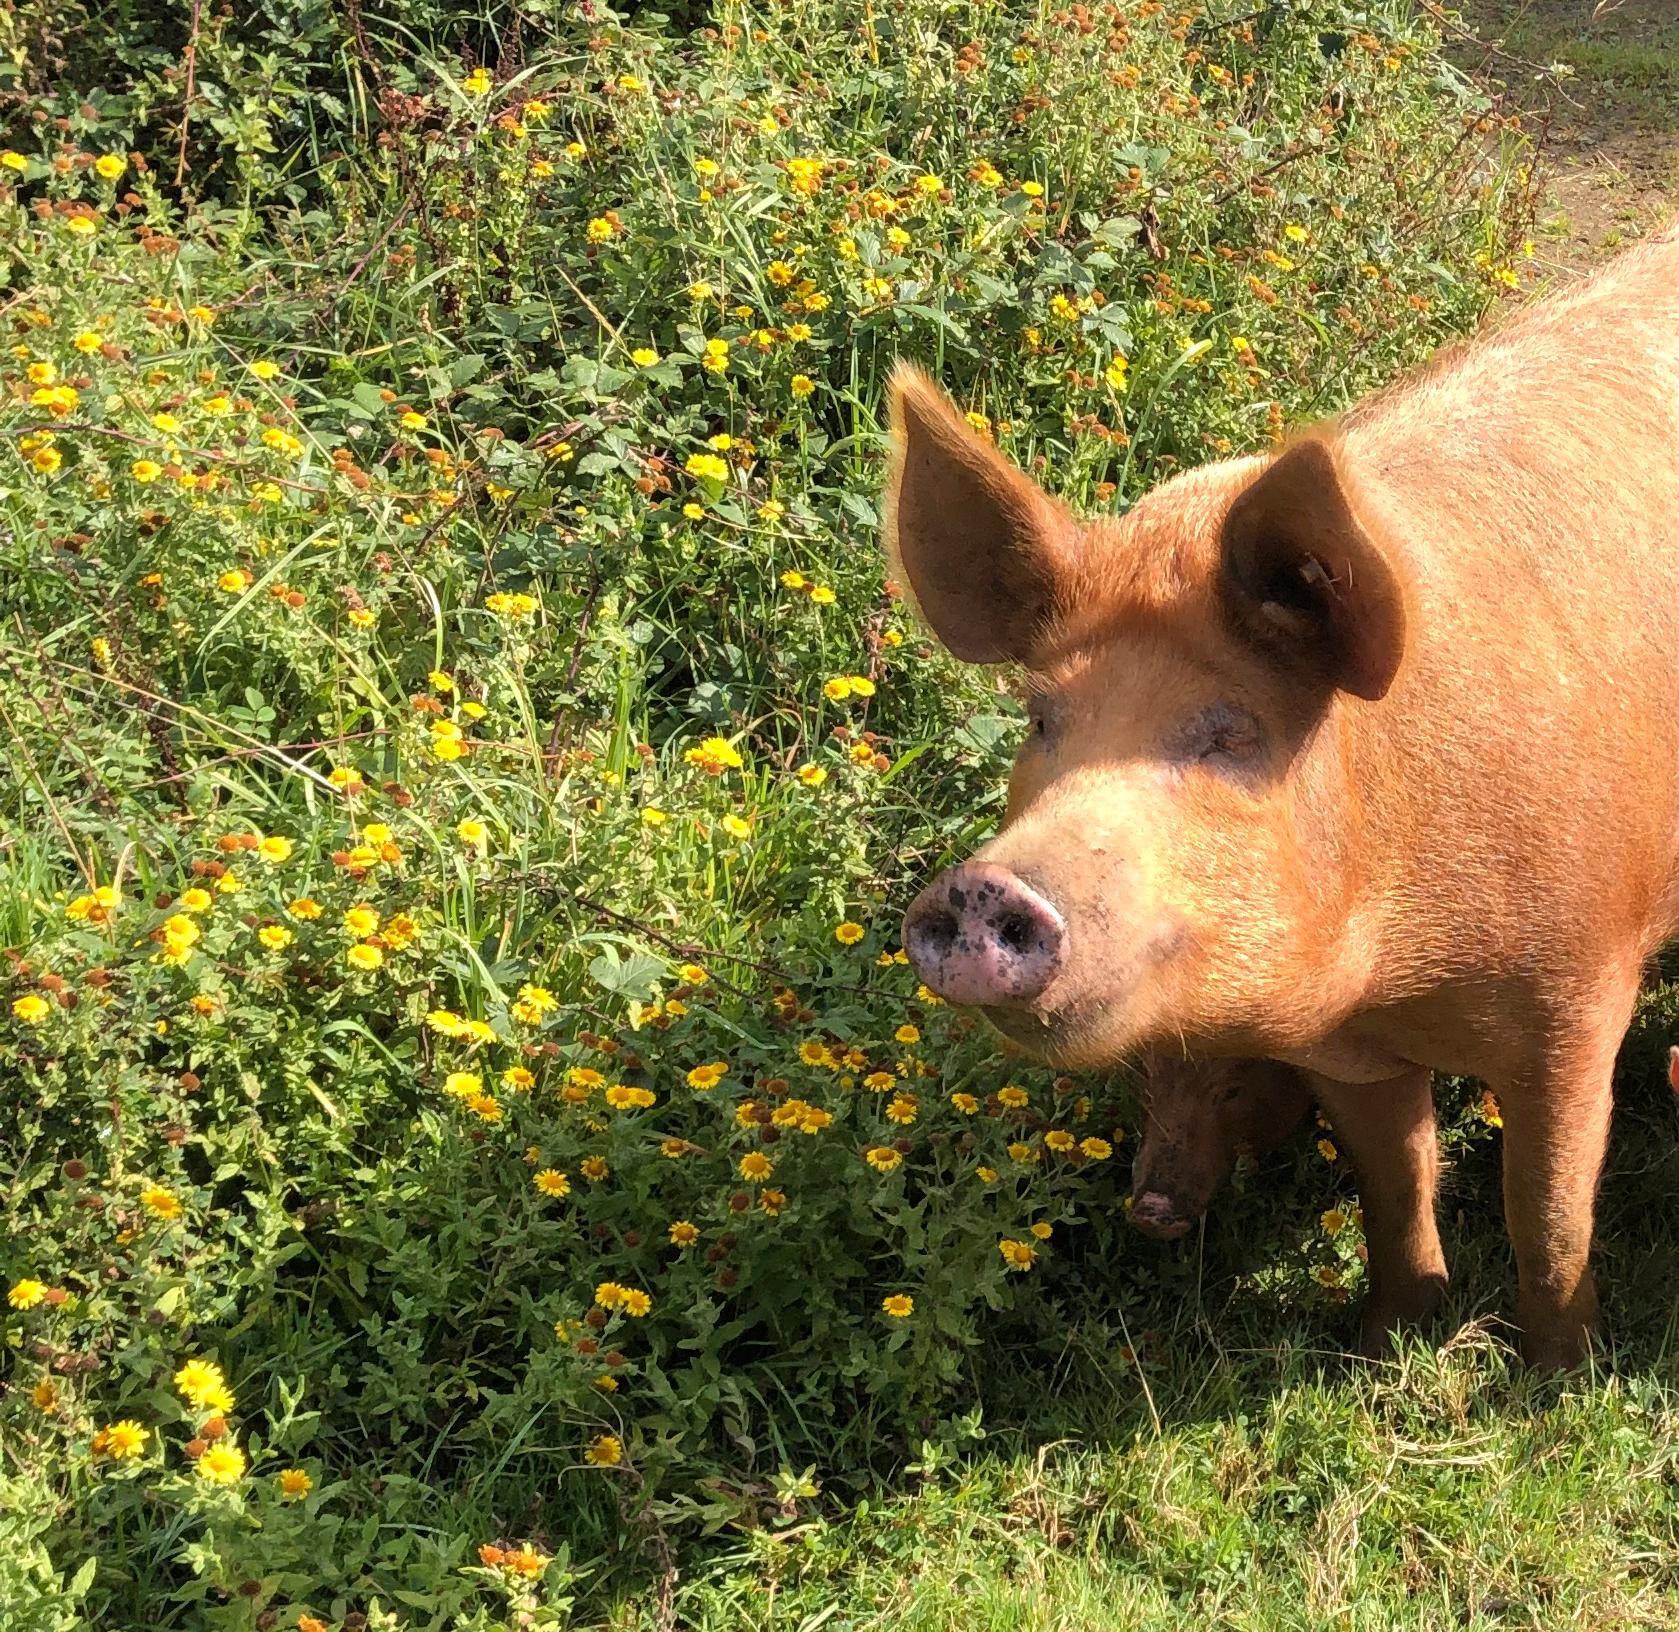 Blommor som inte setts till på flera år kommer fram efter grisarnas bökande.